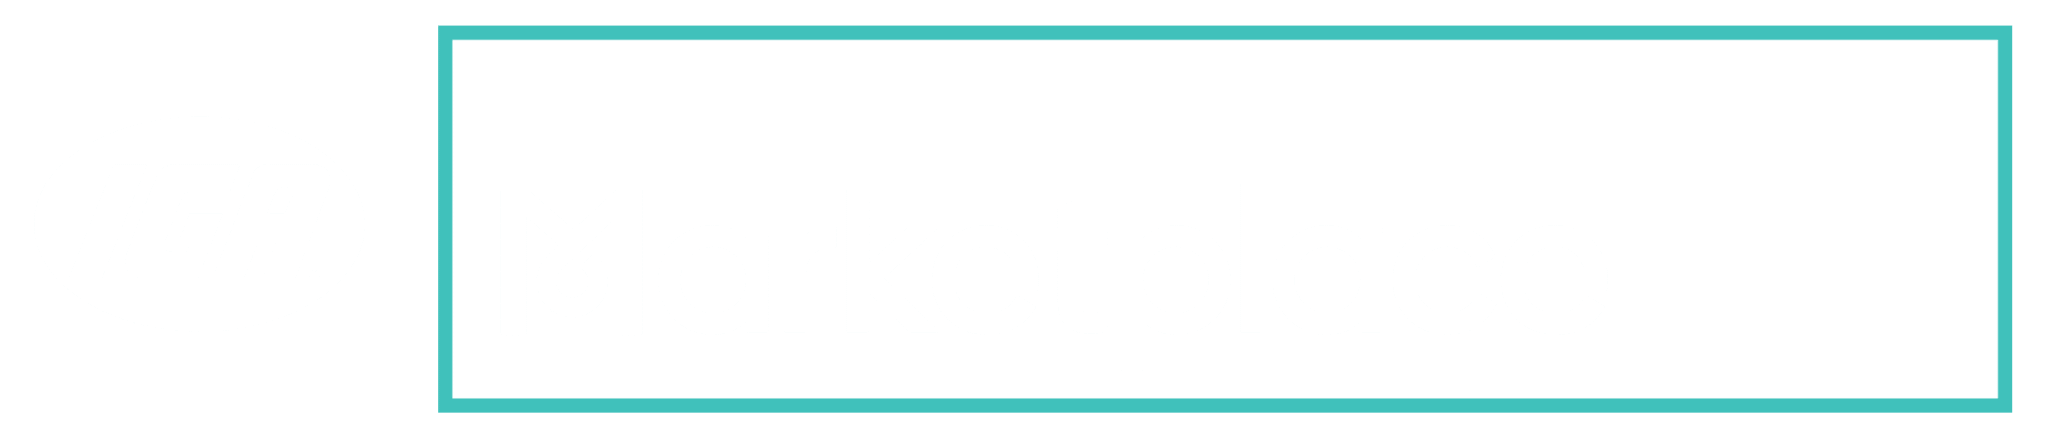 Iga Marketplace Horizontal Logo Reverse